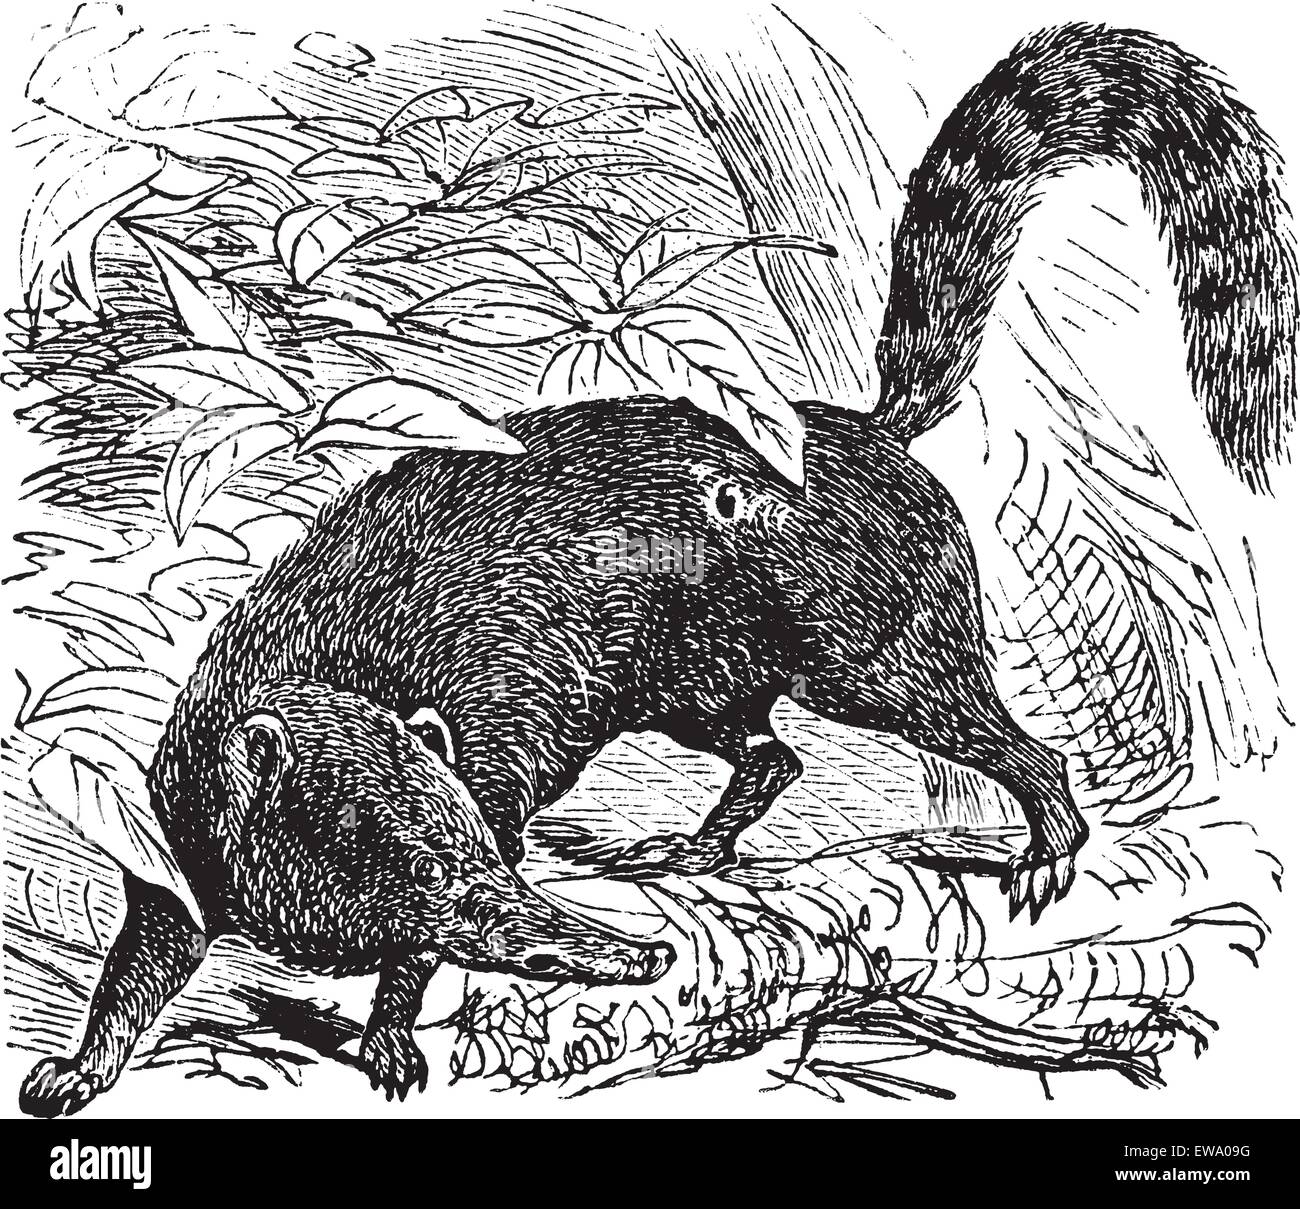 Ring-tailed Coati ou d'Amérique du Sud ou Coati Nasua nasua, gravure d'époque. Ancien gravé illustration d'un ring-tailed coati. Illustration de Vecteur